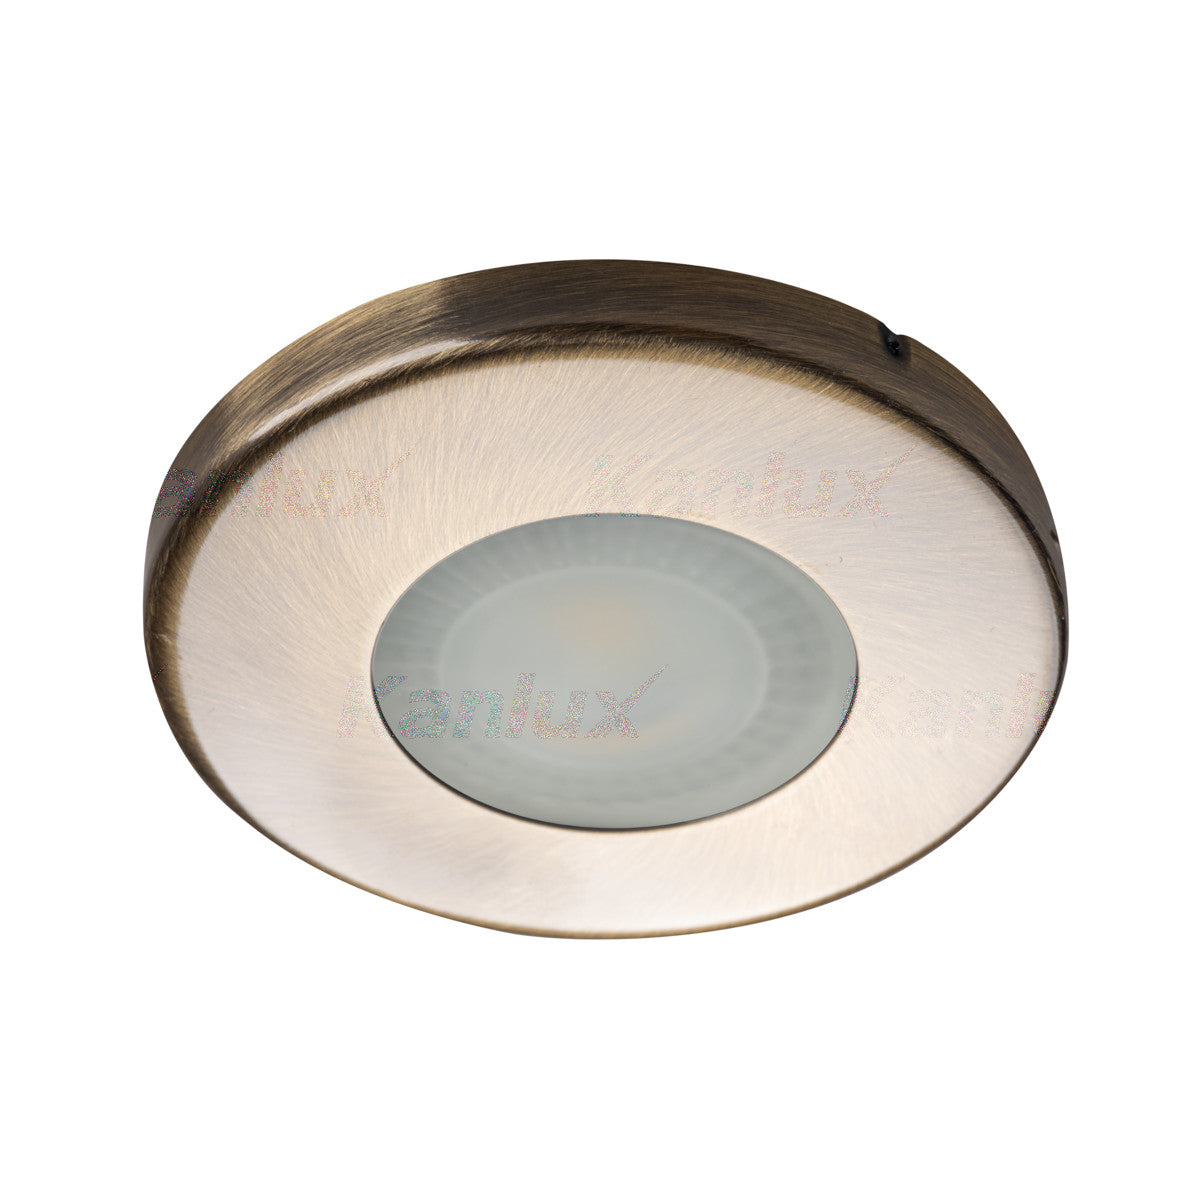 Kanlux MARIN IP44 GU10 Ceiling Recessed Round Mounted Spotlight Downlight Bathroom Kitchen